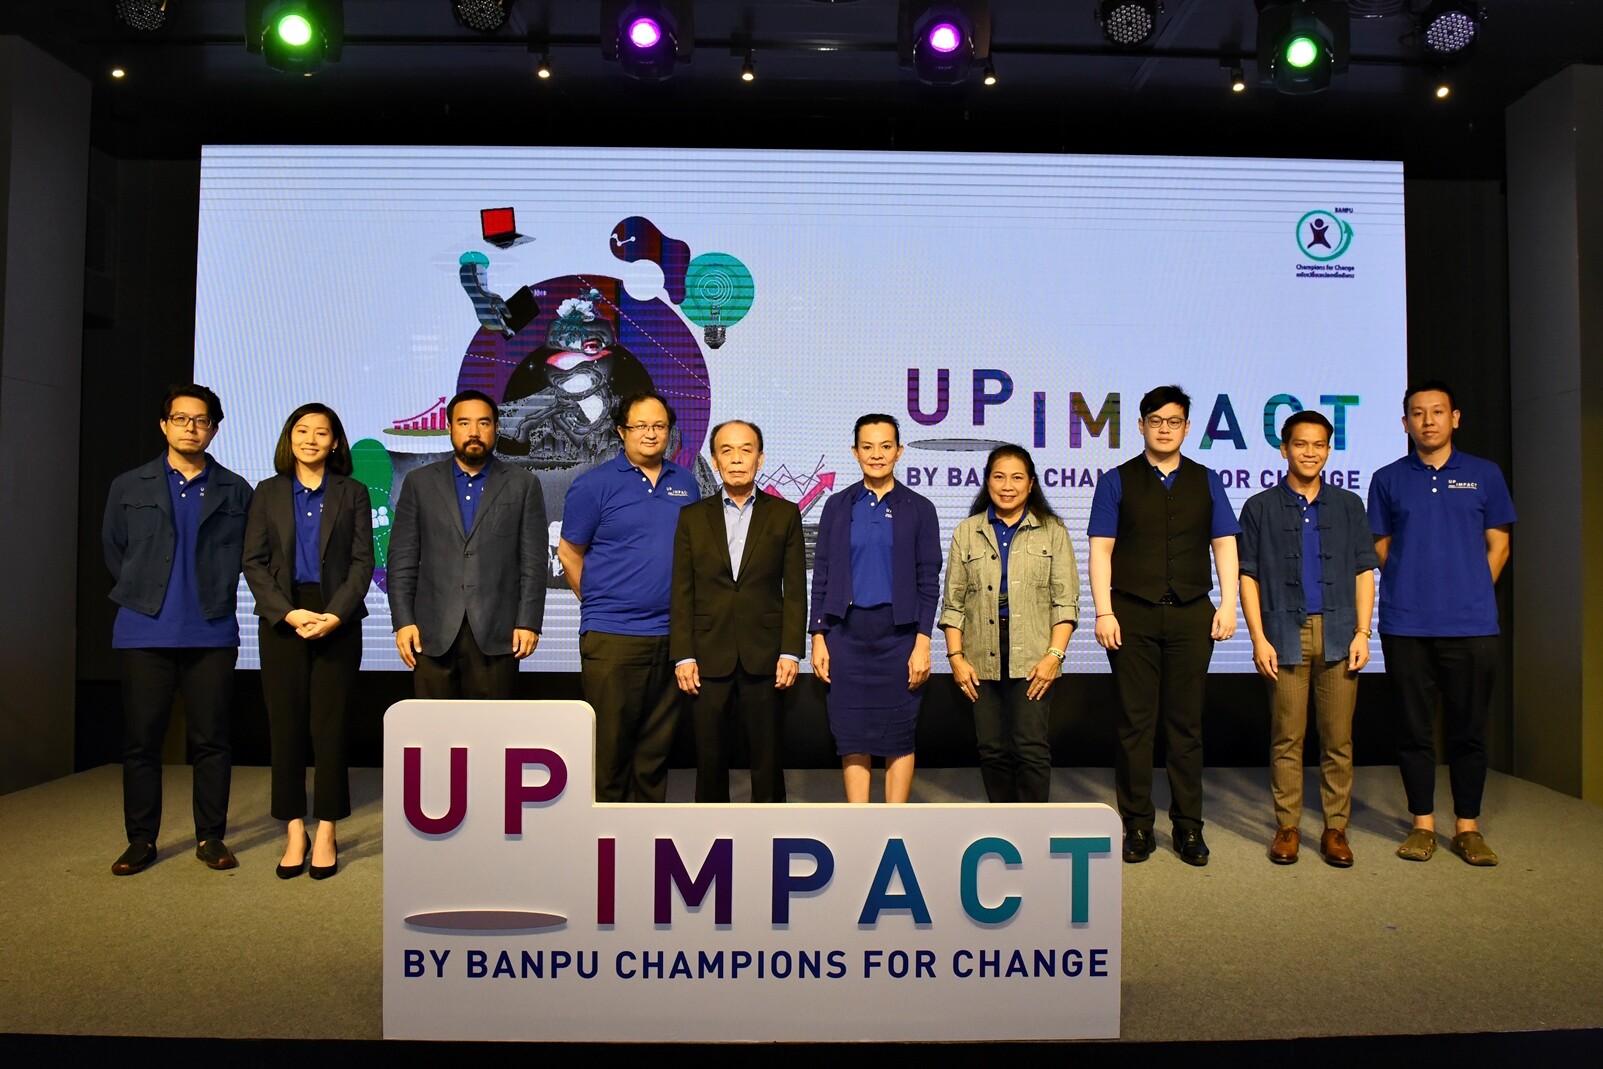 บ้านปูฯ เดินหน้าช่วยผู้ประกอบการสู้วิกฤติเศรษฐกิจ จัดกิจกรรม              “UpImpact by Banpu Champions for Change"